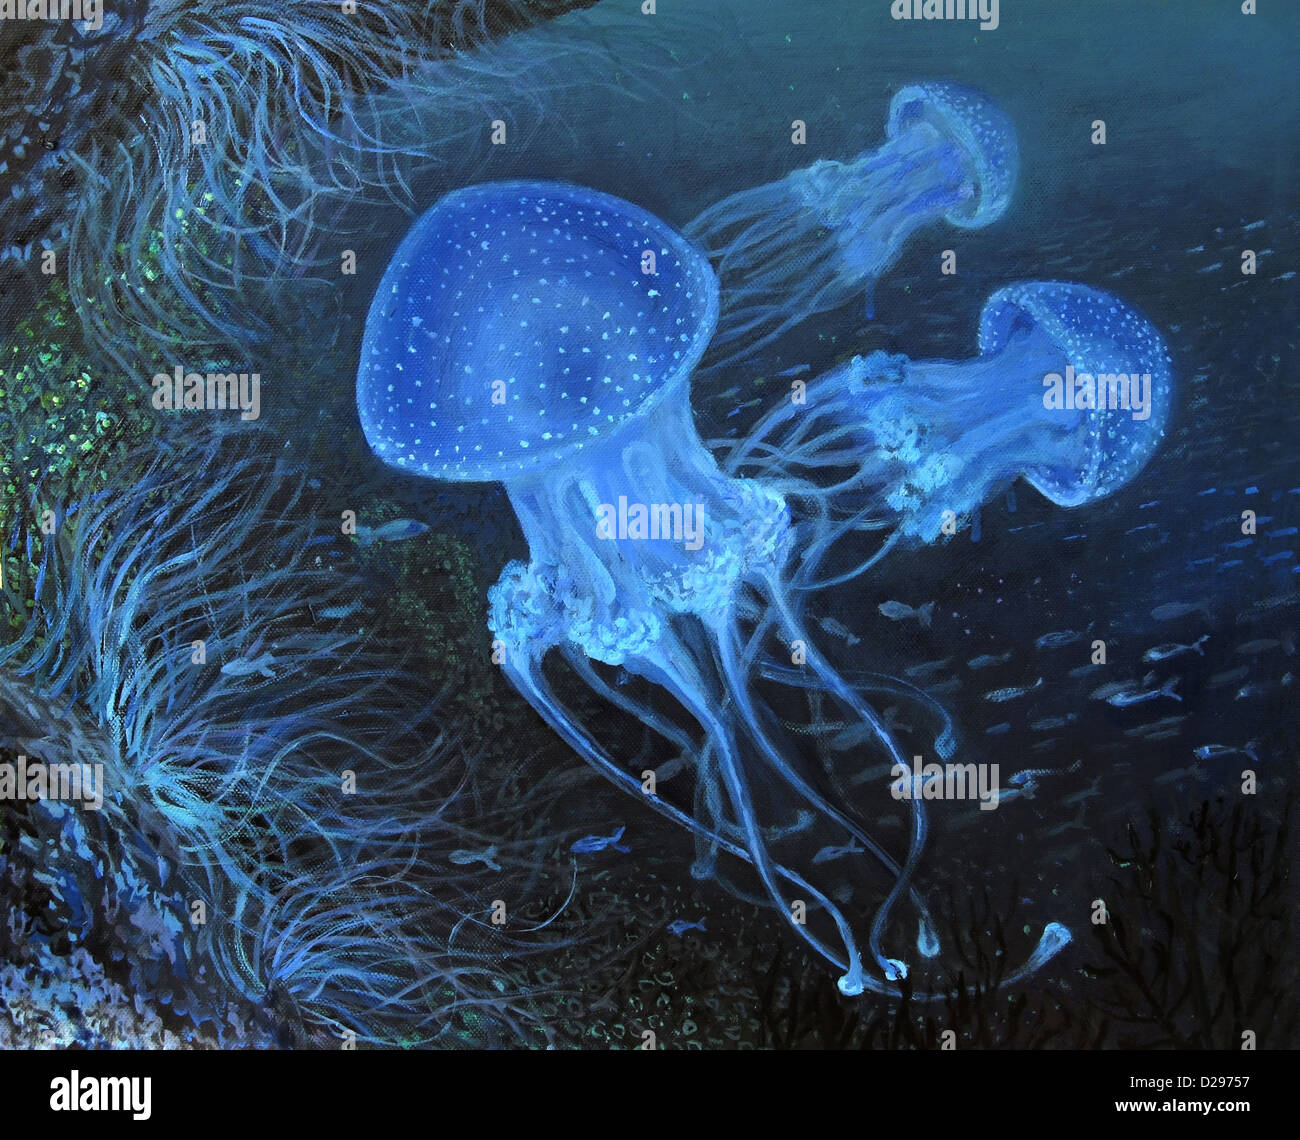 Une peinture à l'huile sur toile d'une vie marine profond sous la surface de l'eau de l'océan avec des méduses en pointillé bleu fluorescent. Banque D'Images